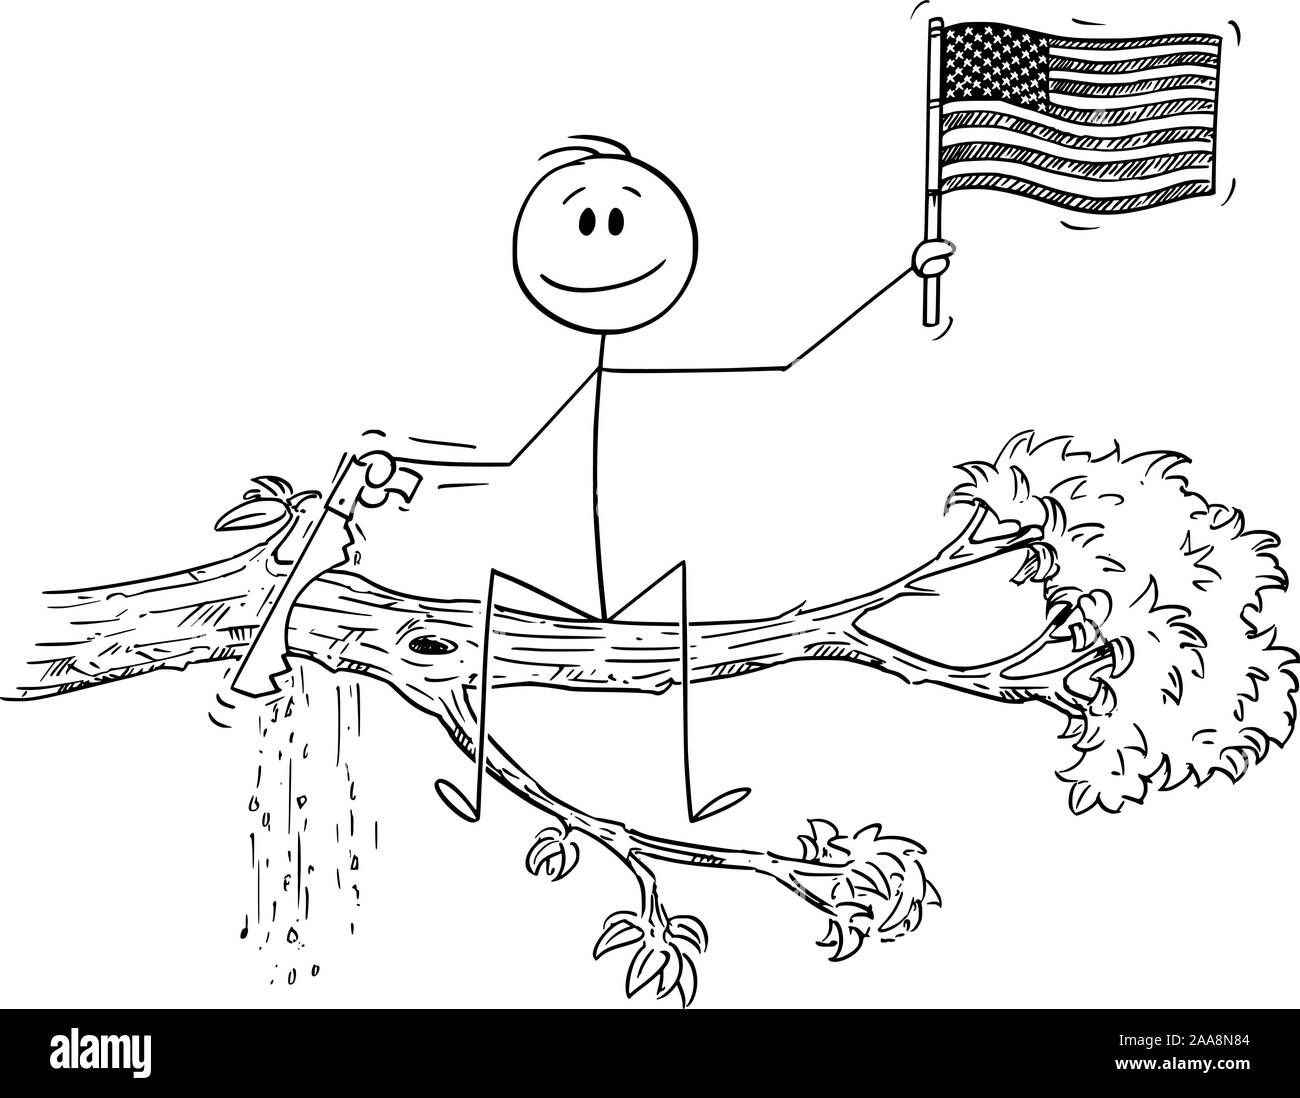 Vektor cartoon Strichmännchen Zeichnen konzeptionelle Darstellung der Mann mit der Flagge der Vereinigten Staaten von Amerika oder USA, und Schneiden mit sah den Ast ab, auf dem er sitzt. Stock Vektor